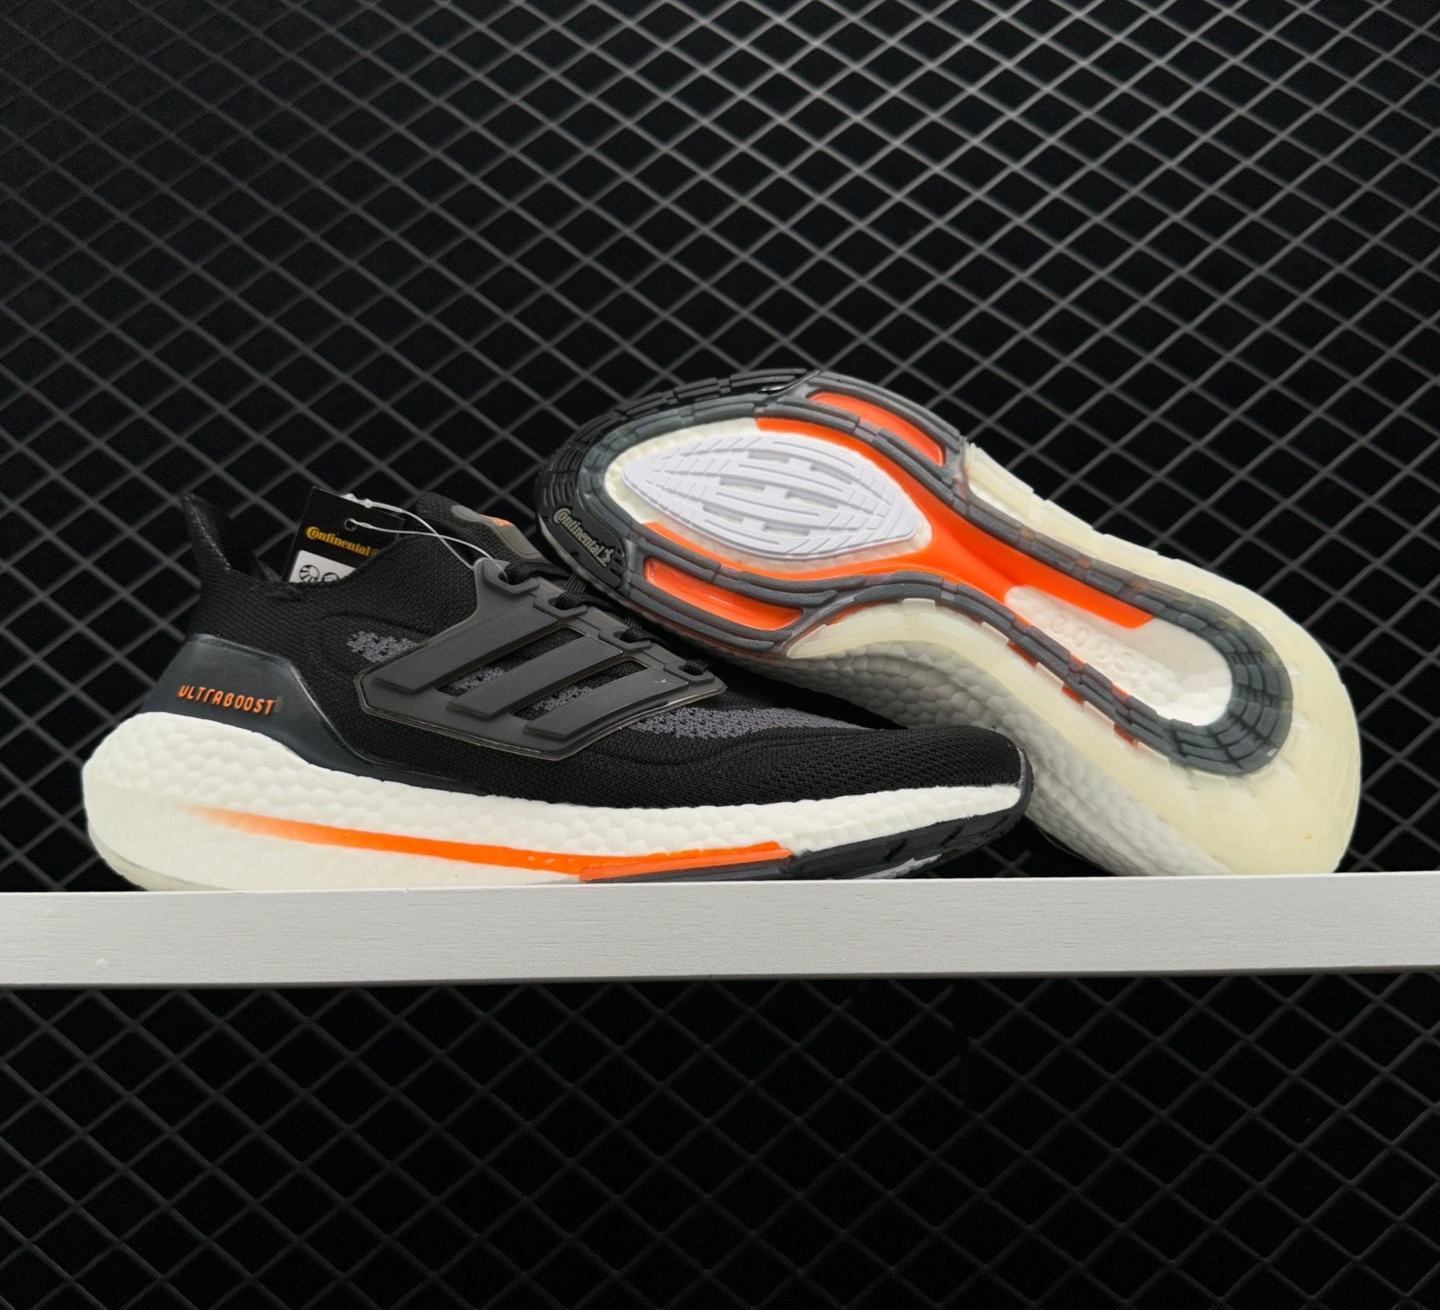 Adidas UltraBoost 21 'Black Screaming Orange' FY0389 - Stylish and Dynamic Footwear